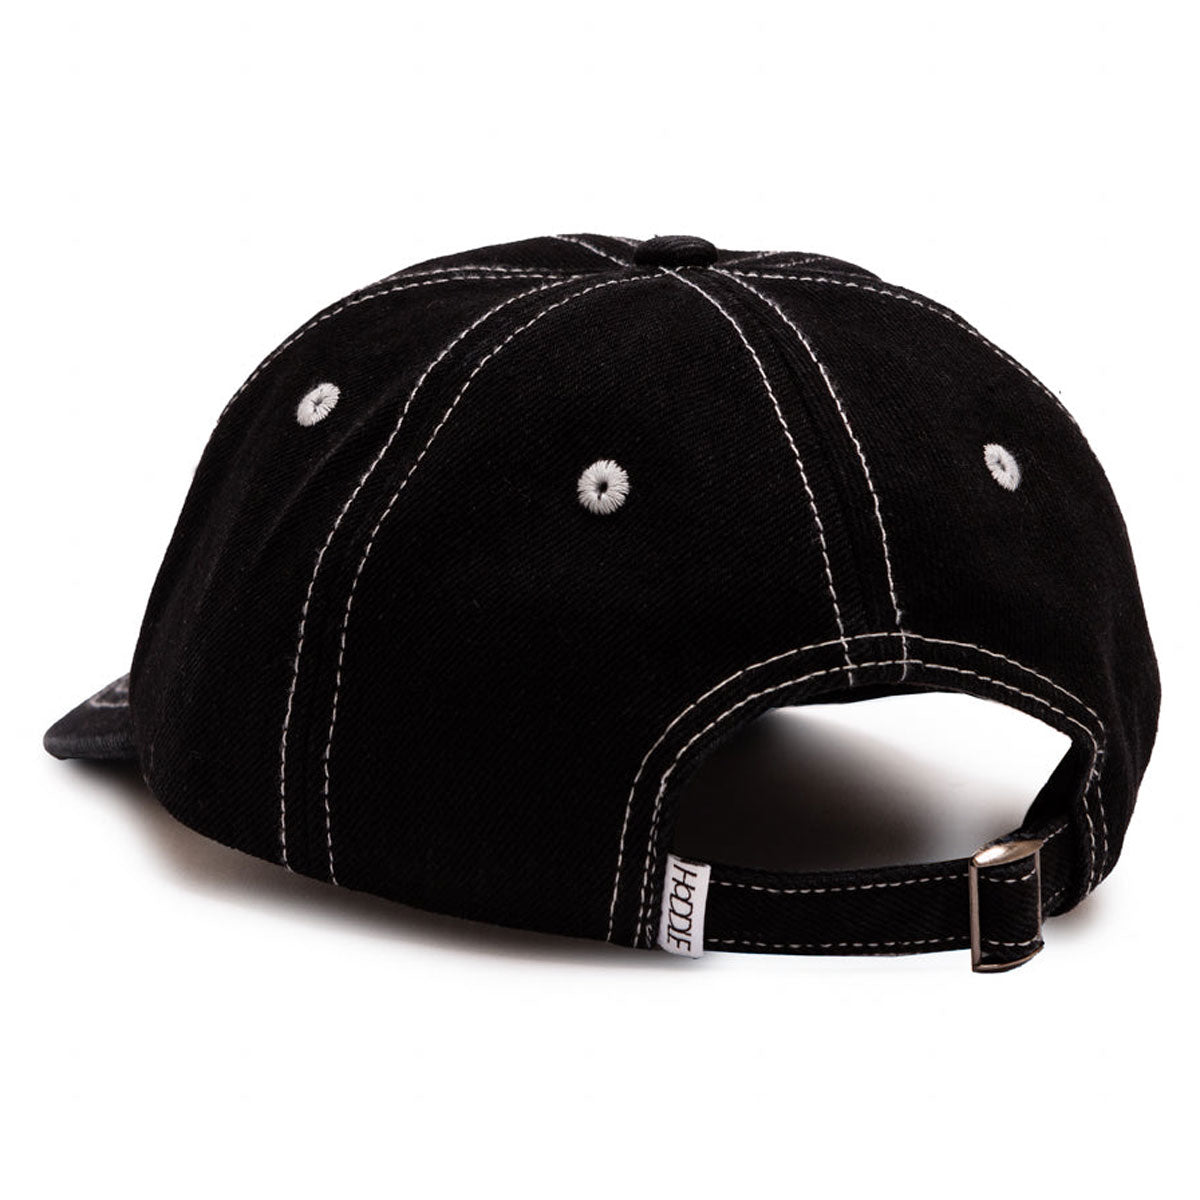 Hoddle Logo Denim Hat - Black Wash image 2